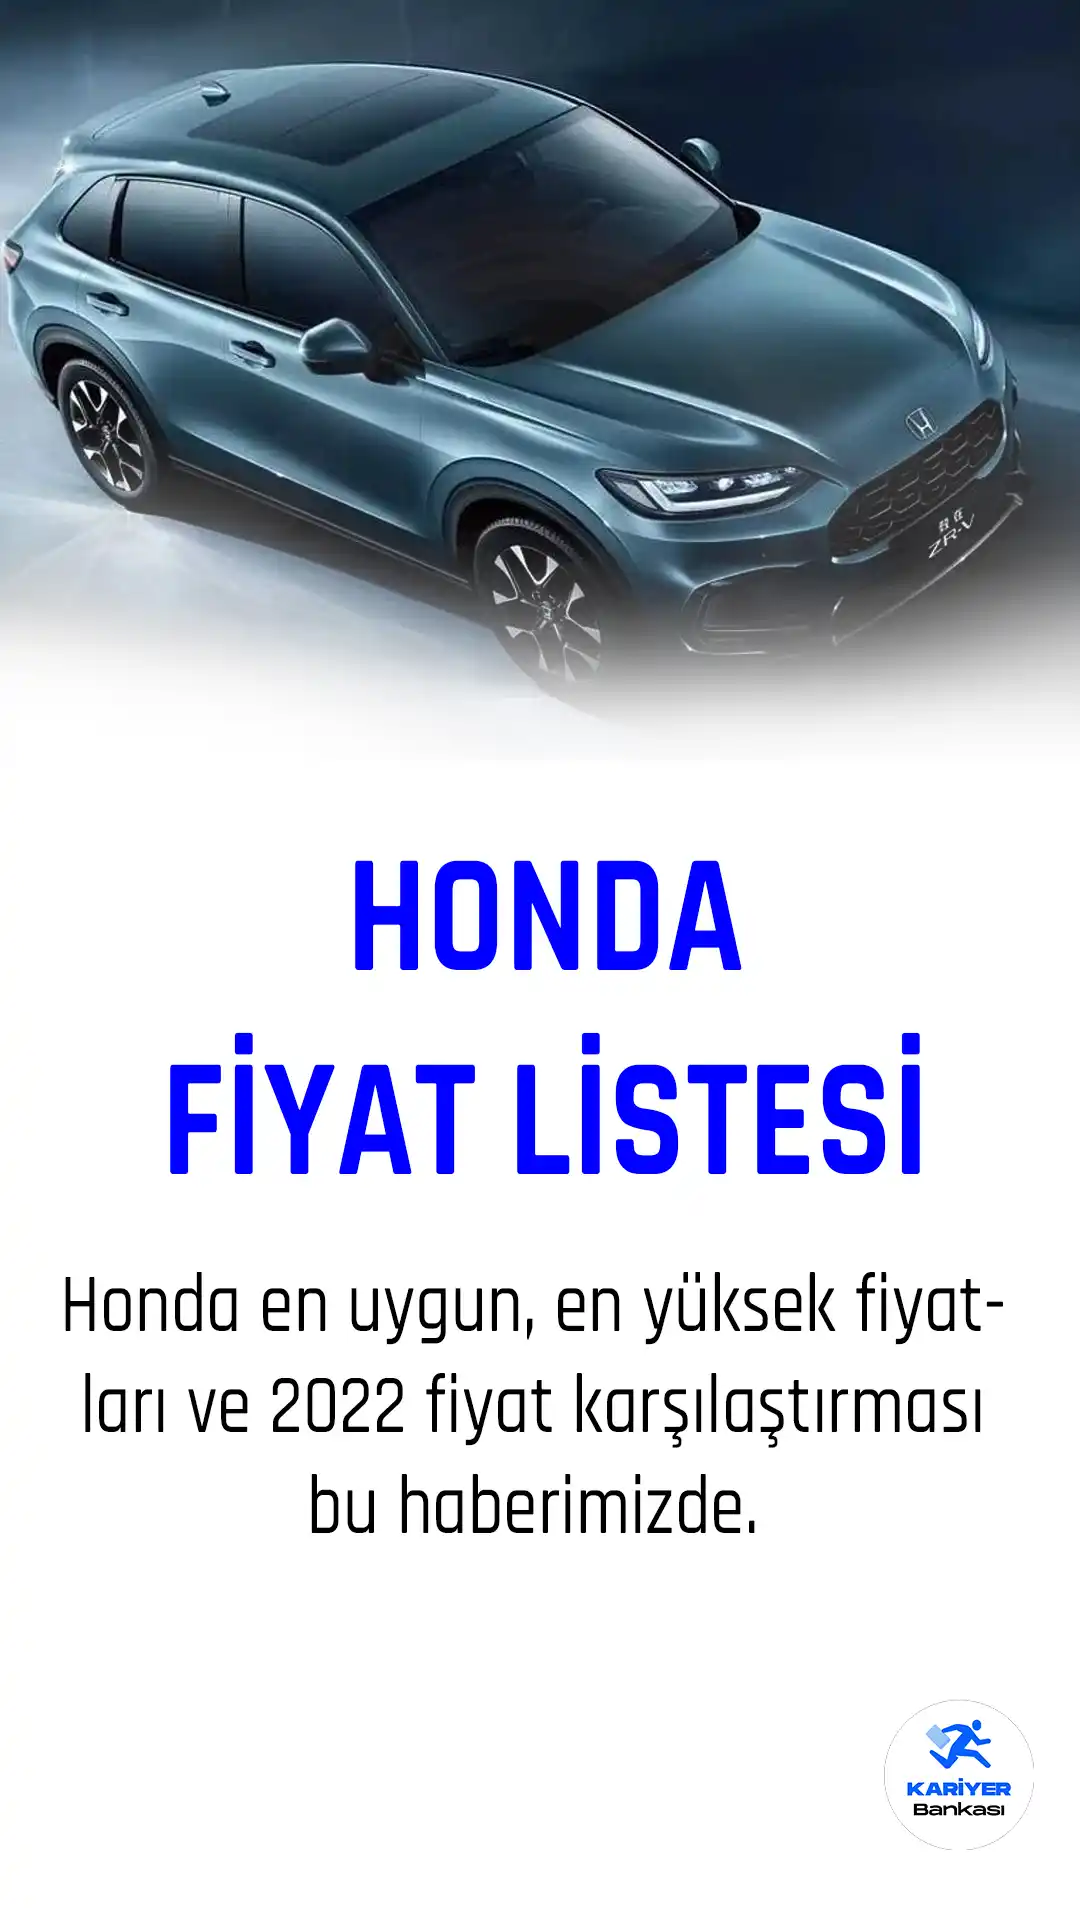 Honda 2023 fiyat listesi yayımlandı.